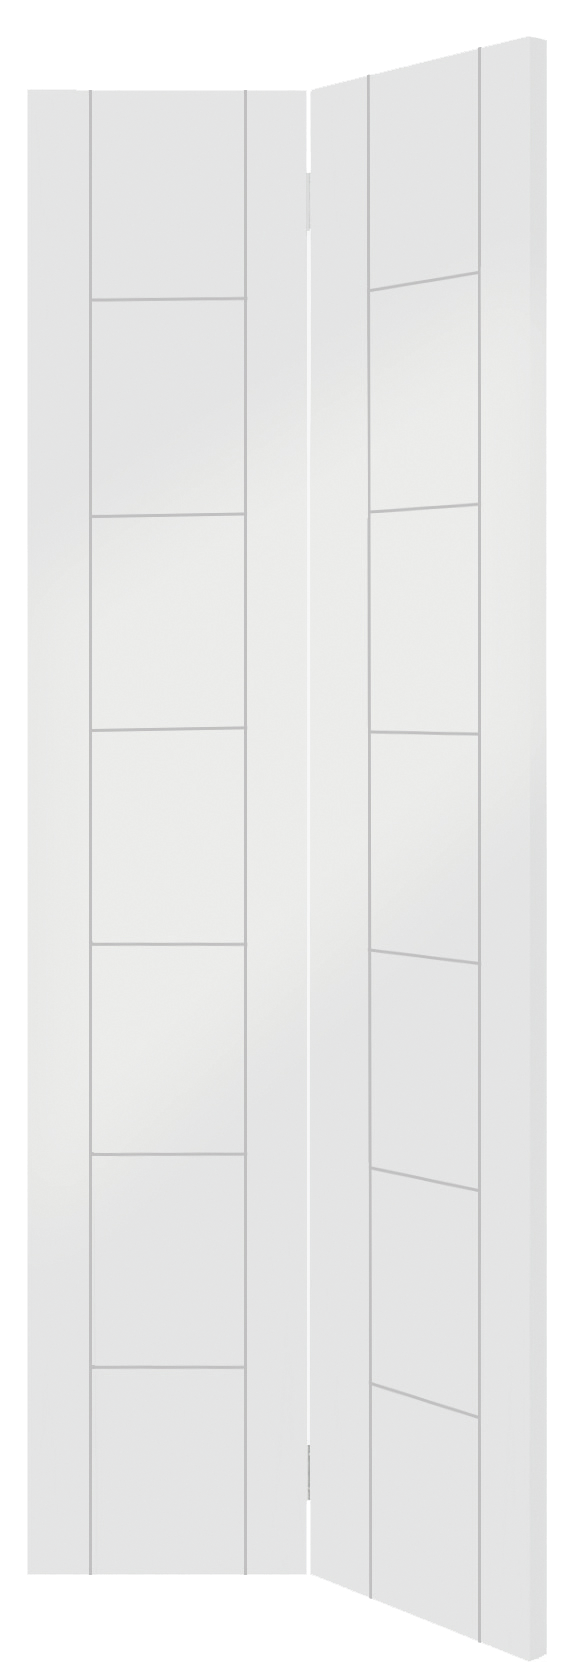 Palermo Internal White Primed Bi-Fold Door – Glacier, 1981 x 686 x 35 mm